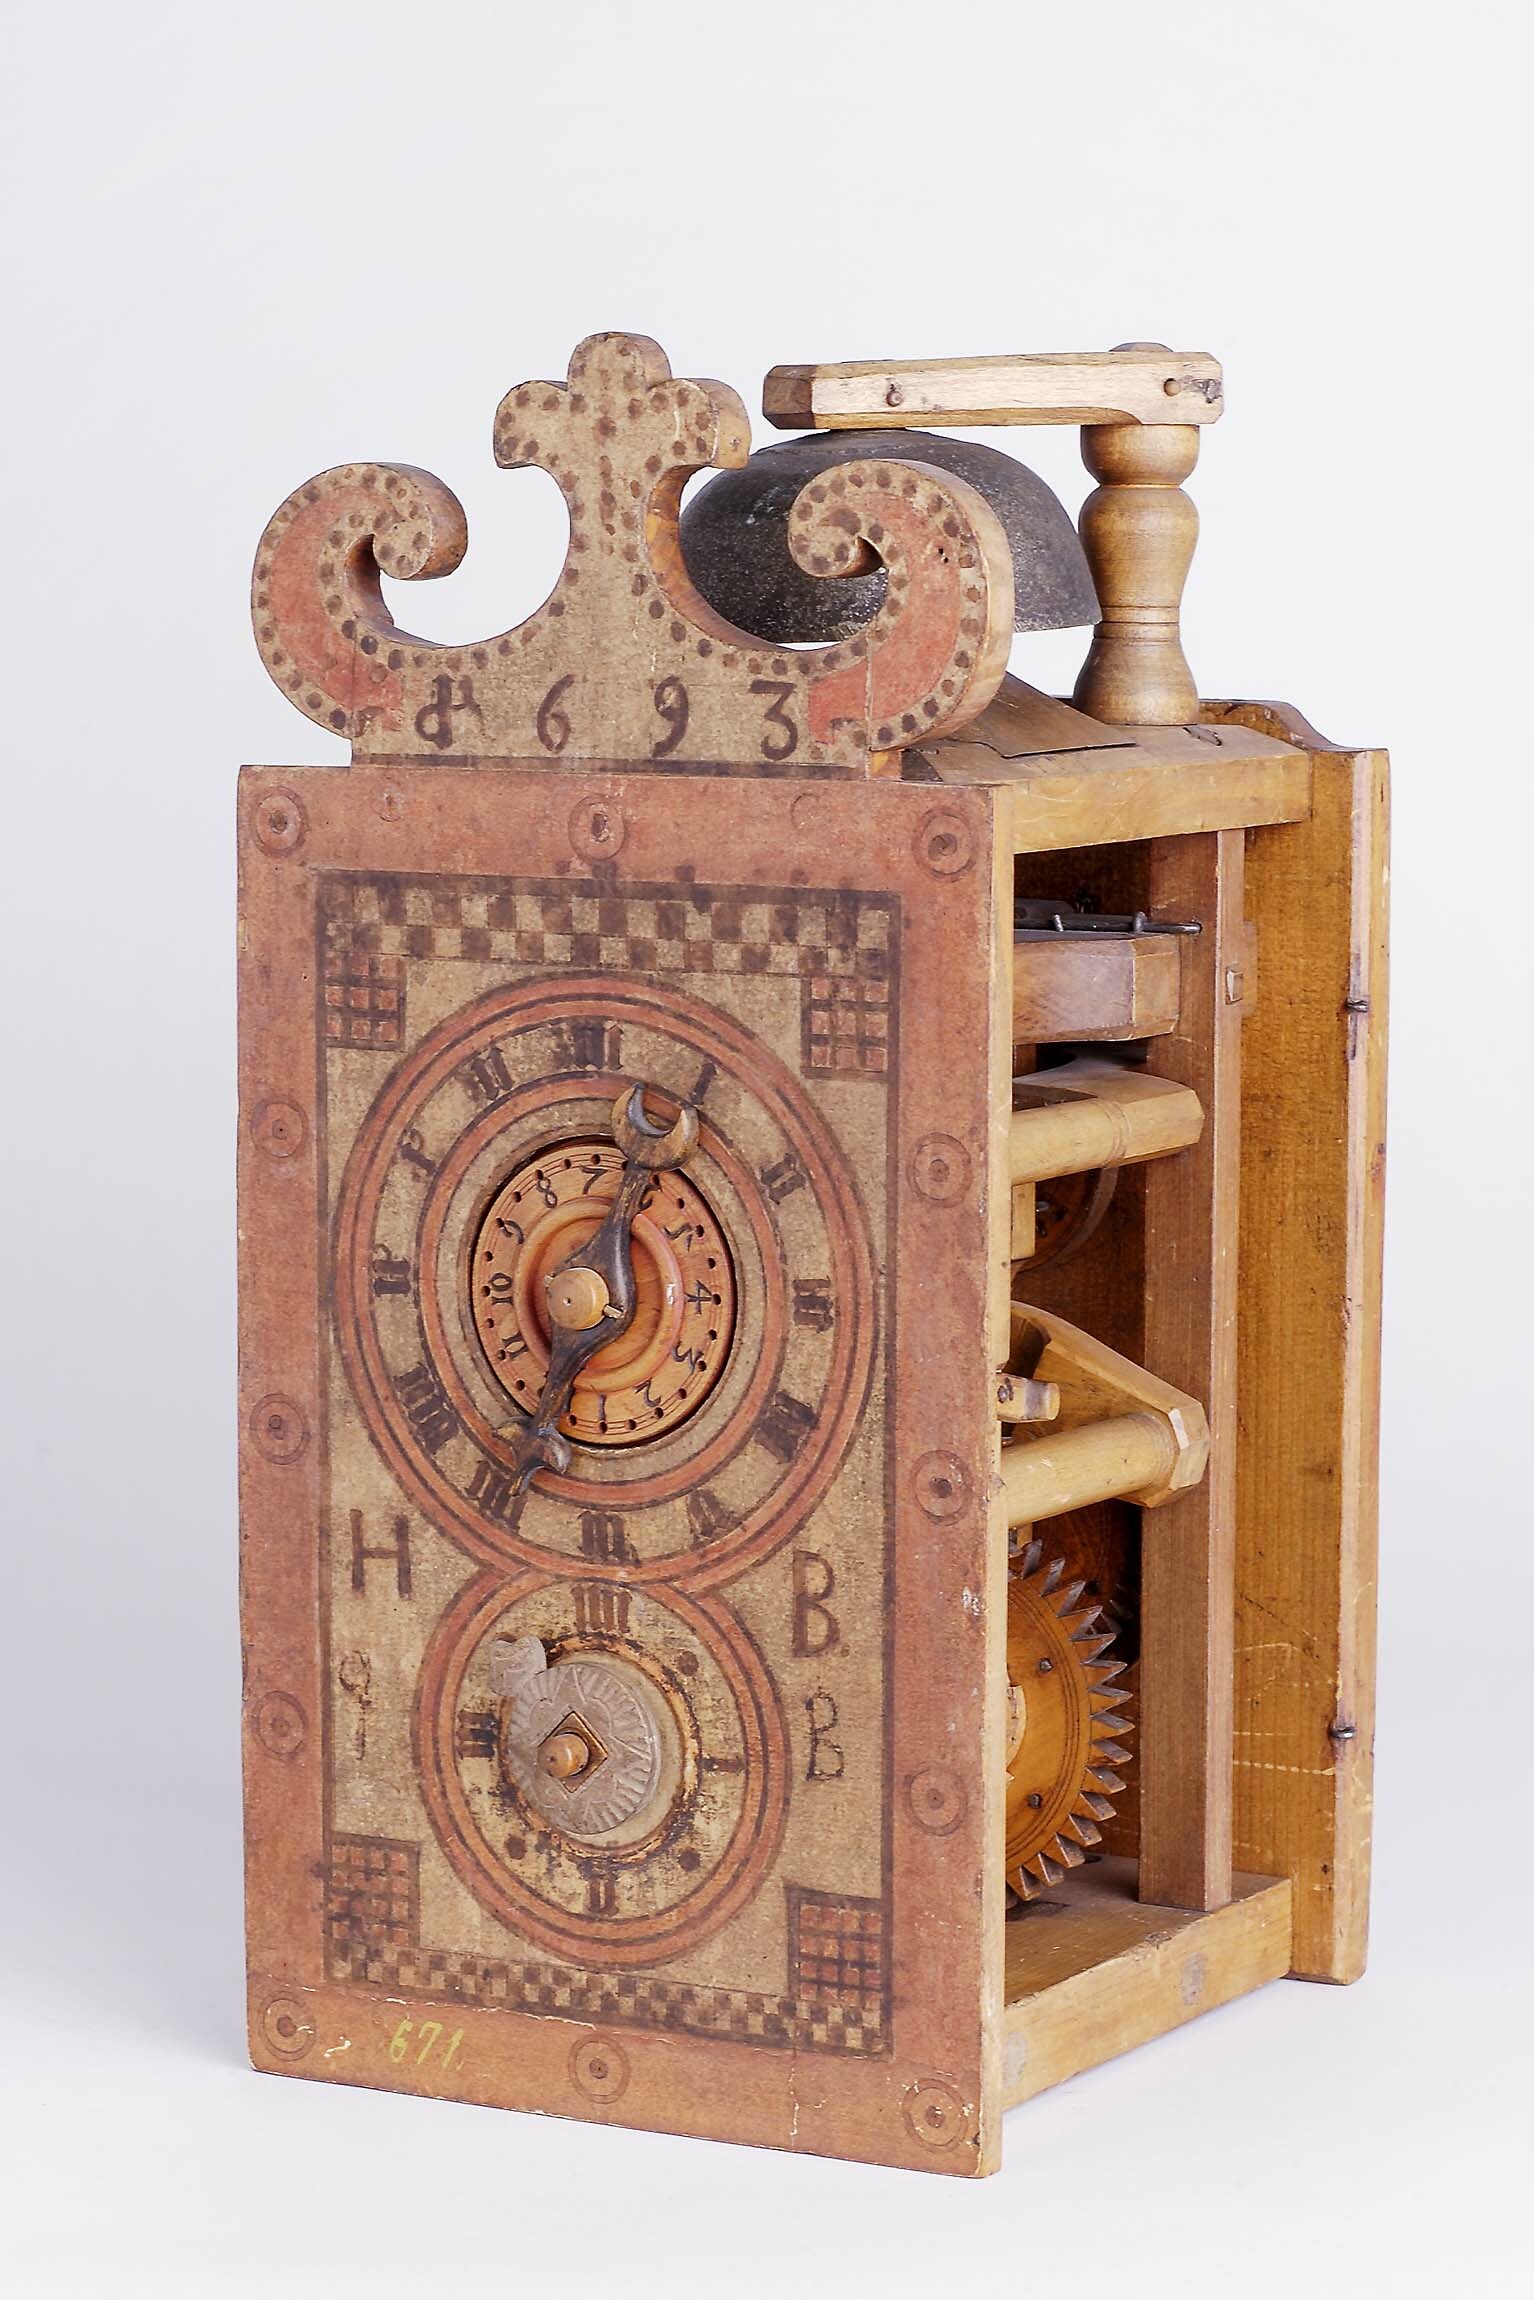 Holzräderuhr, H.B., Davos (Schweiz), 1693 (Deutsches Uhrenmuseum CC BY-SA)